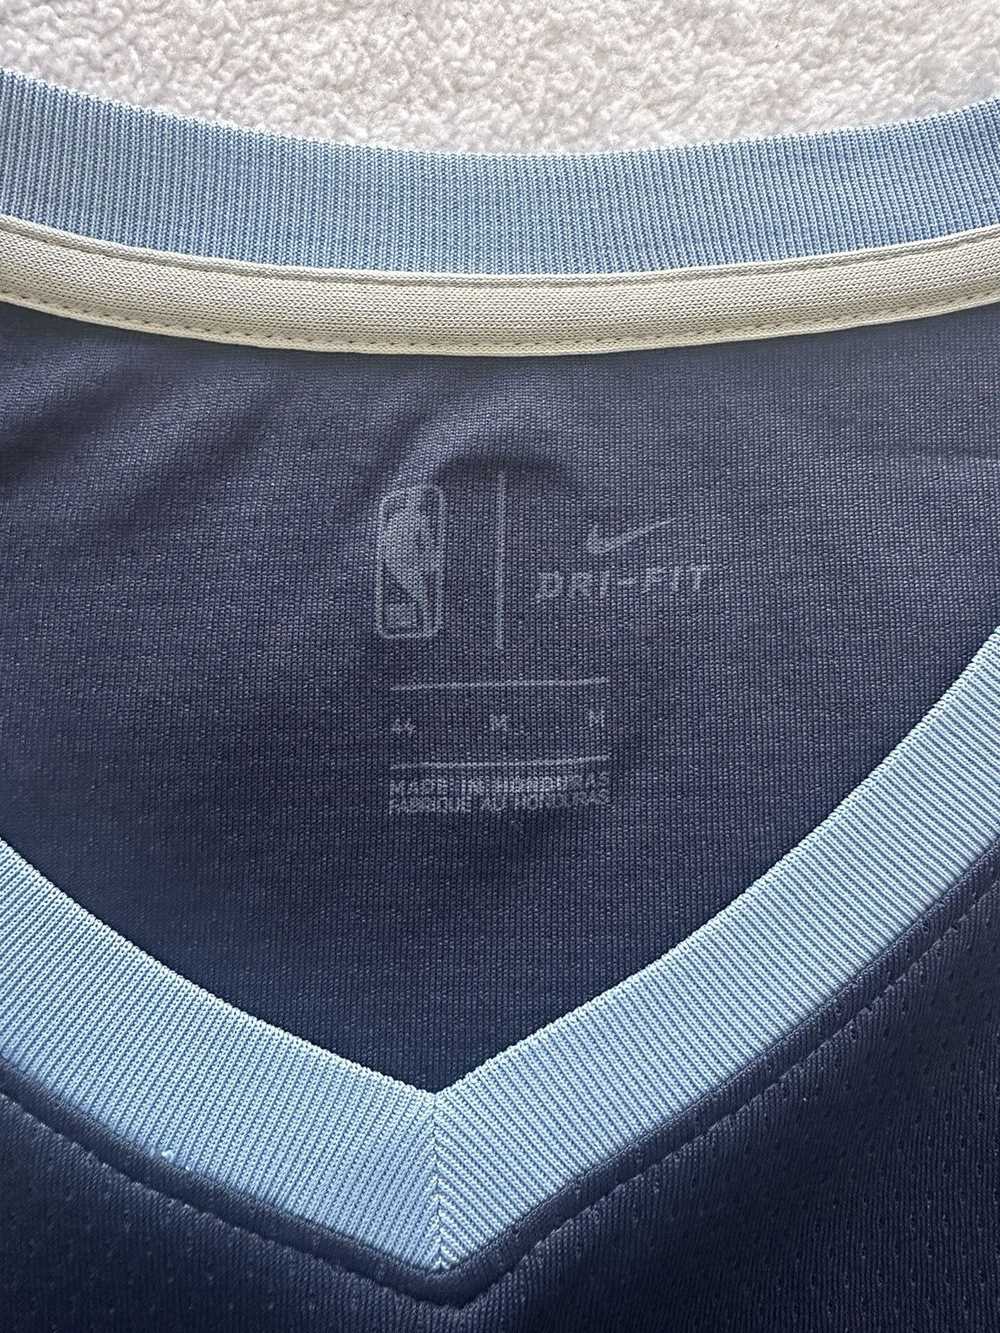 Jersey × NBA × Sportswear Ja Morant Grizzlies Jer… - image 6